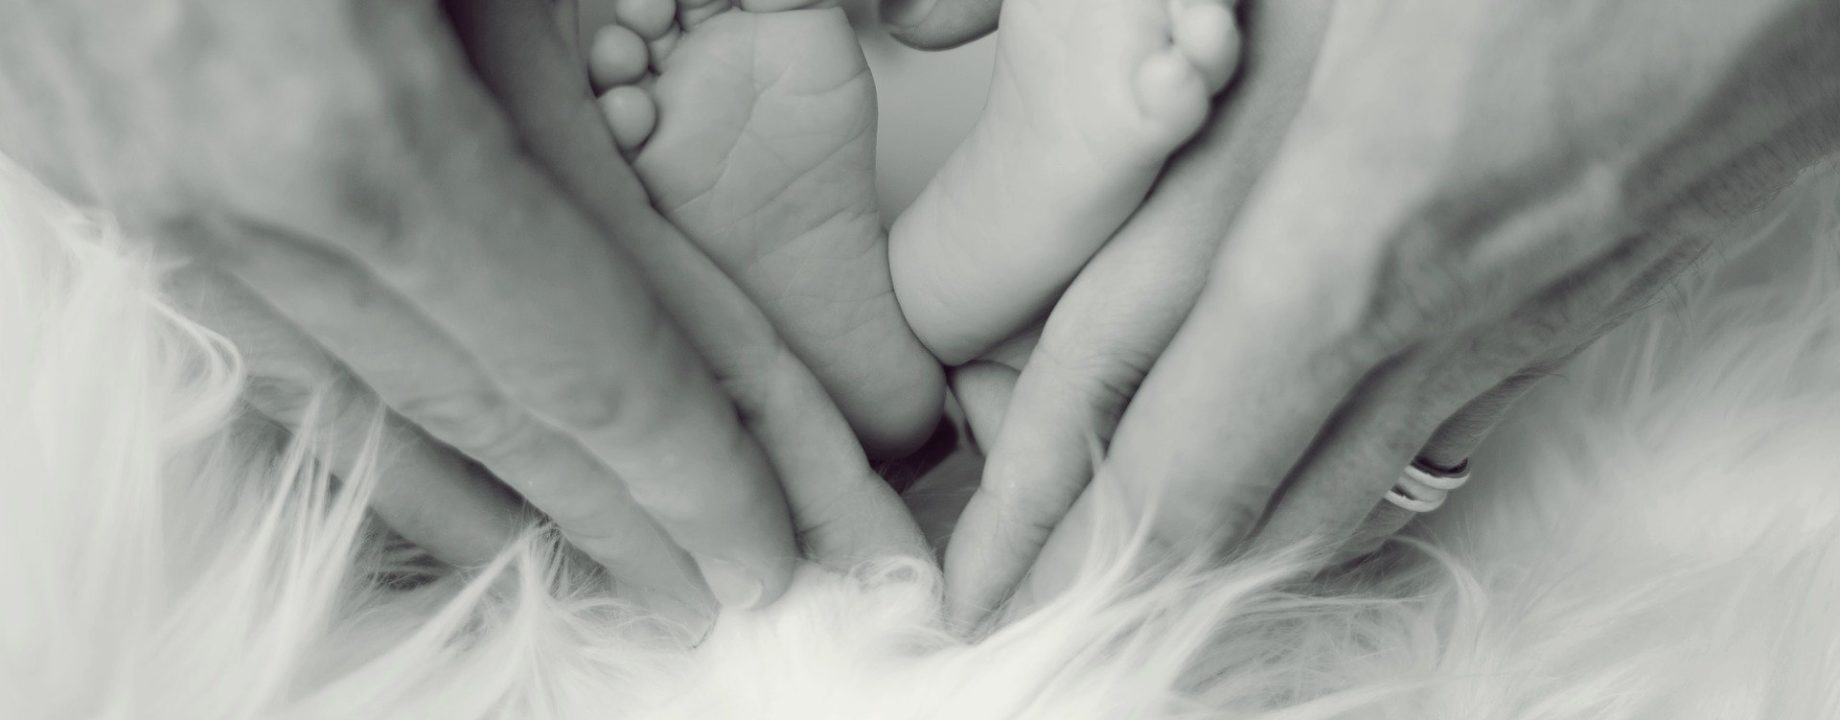 születés család pixabay